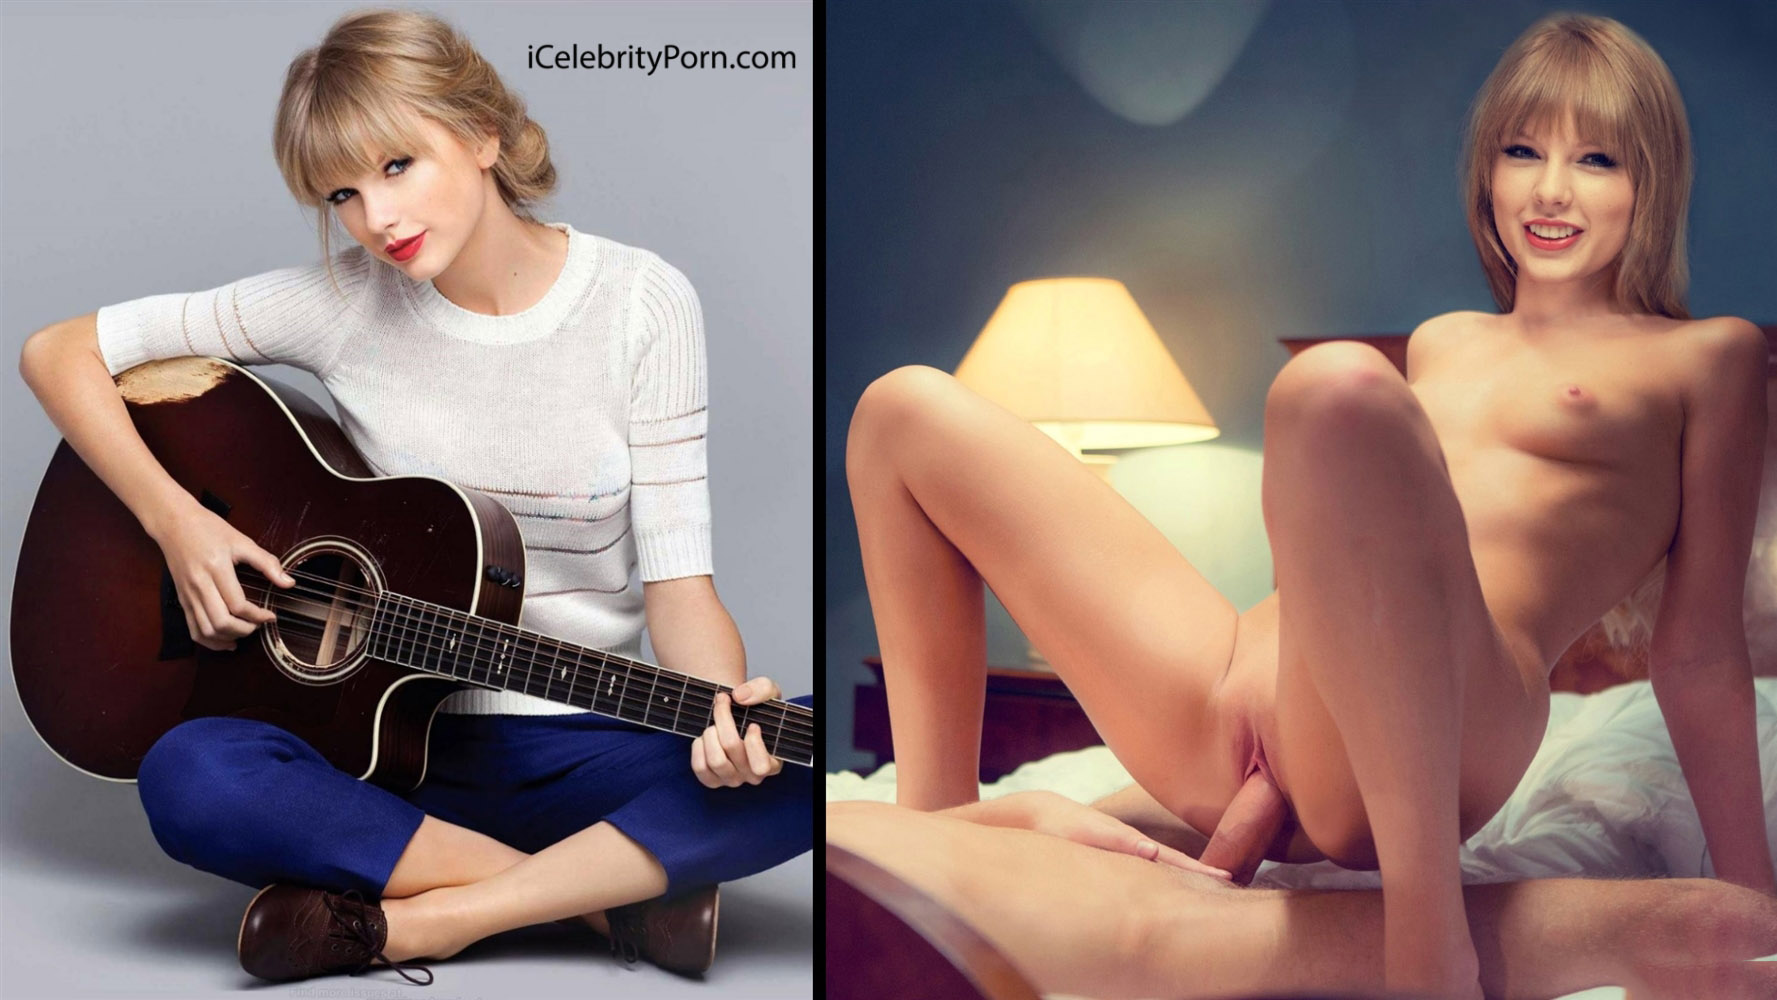 Taylor Swift porno - fotos xxx - porno - sexo - 2017 - iCelebrityPorn - Taylor Swift desnuda - Taylor Swift comiendo polla